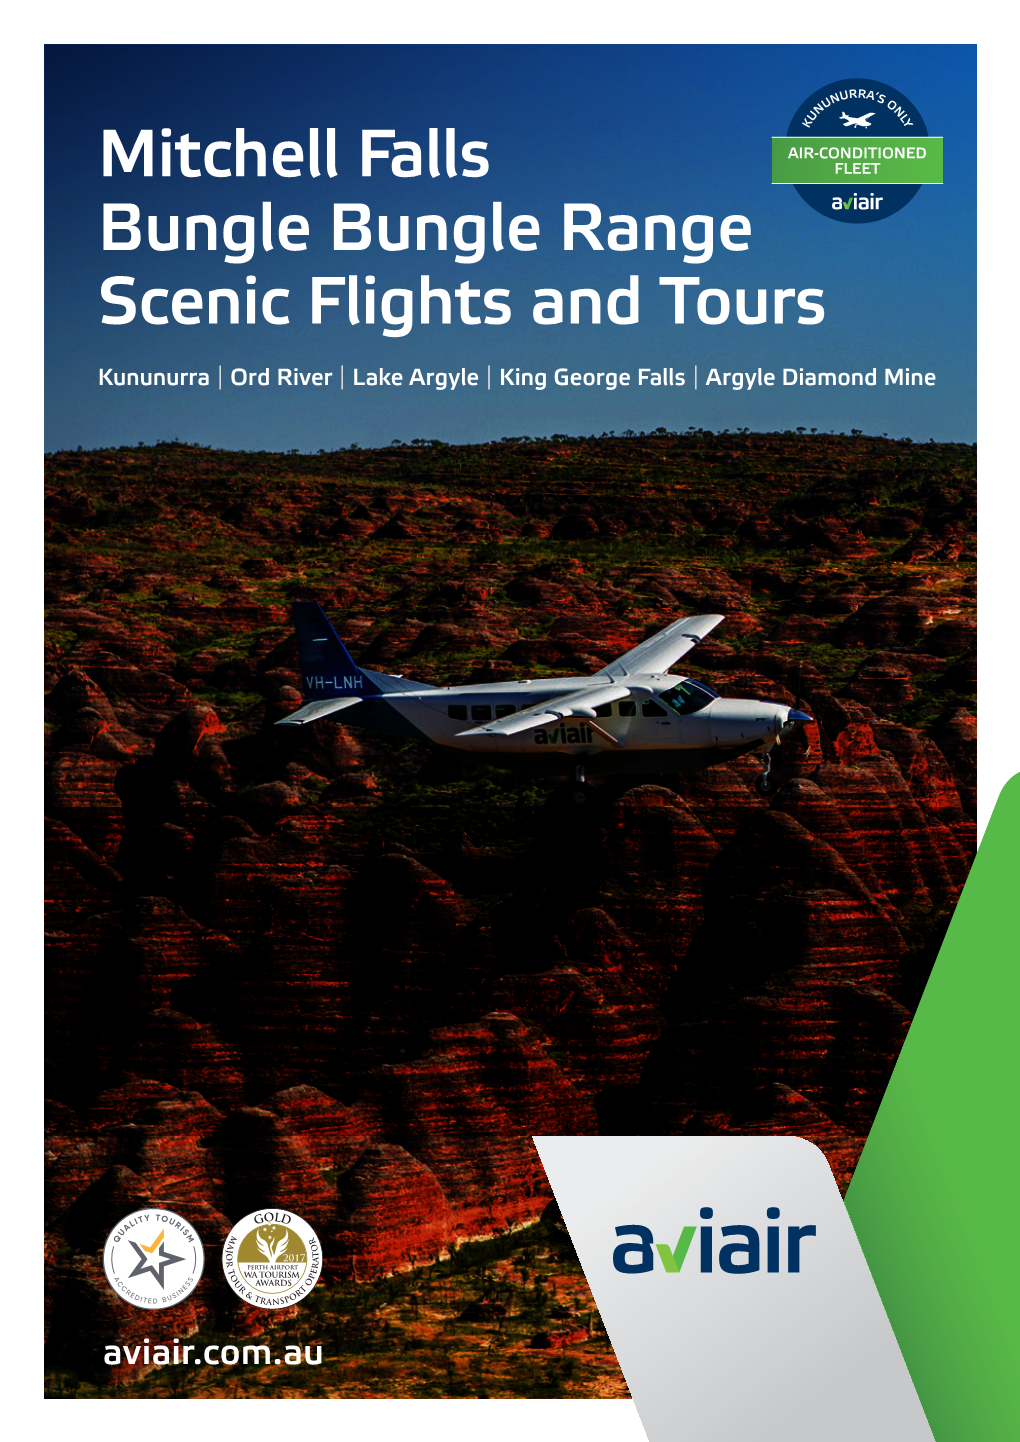 Mitchell Falls Bungle Bungle Range Scenic Flights and Tours